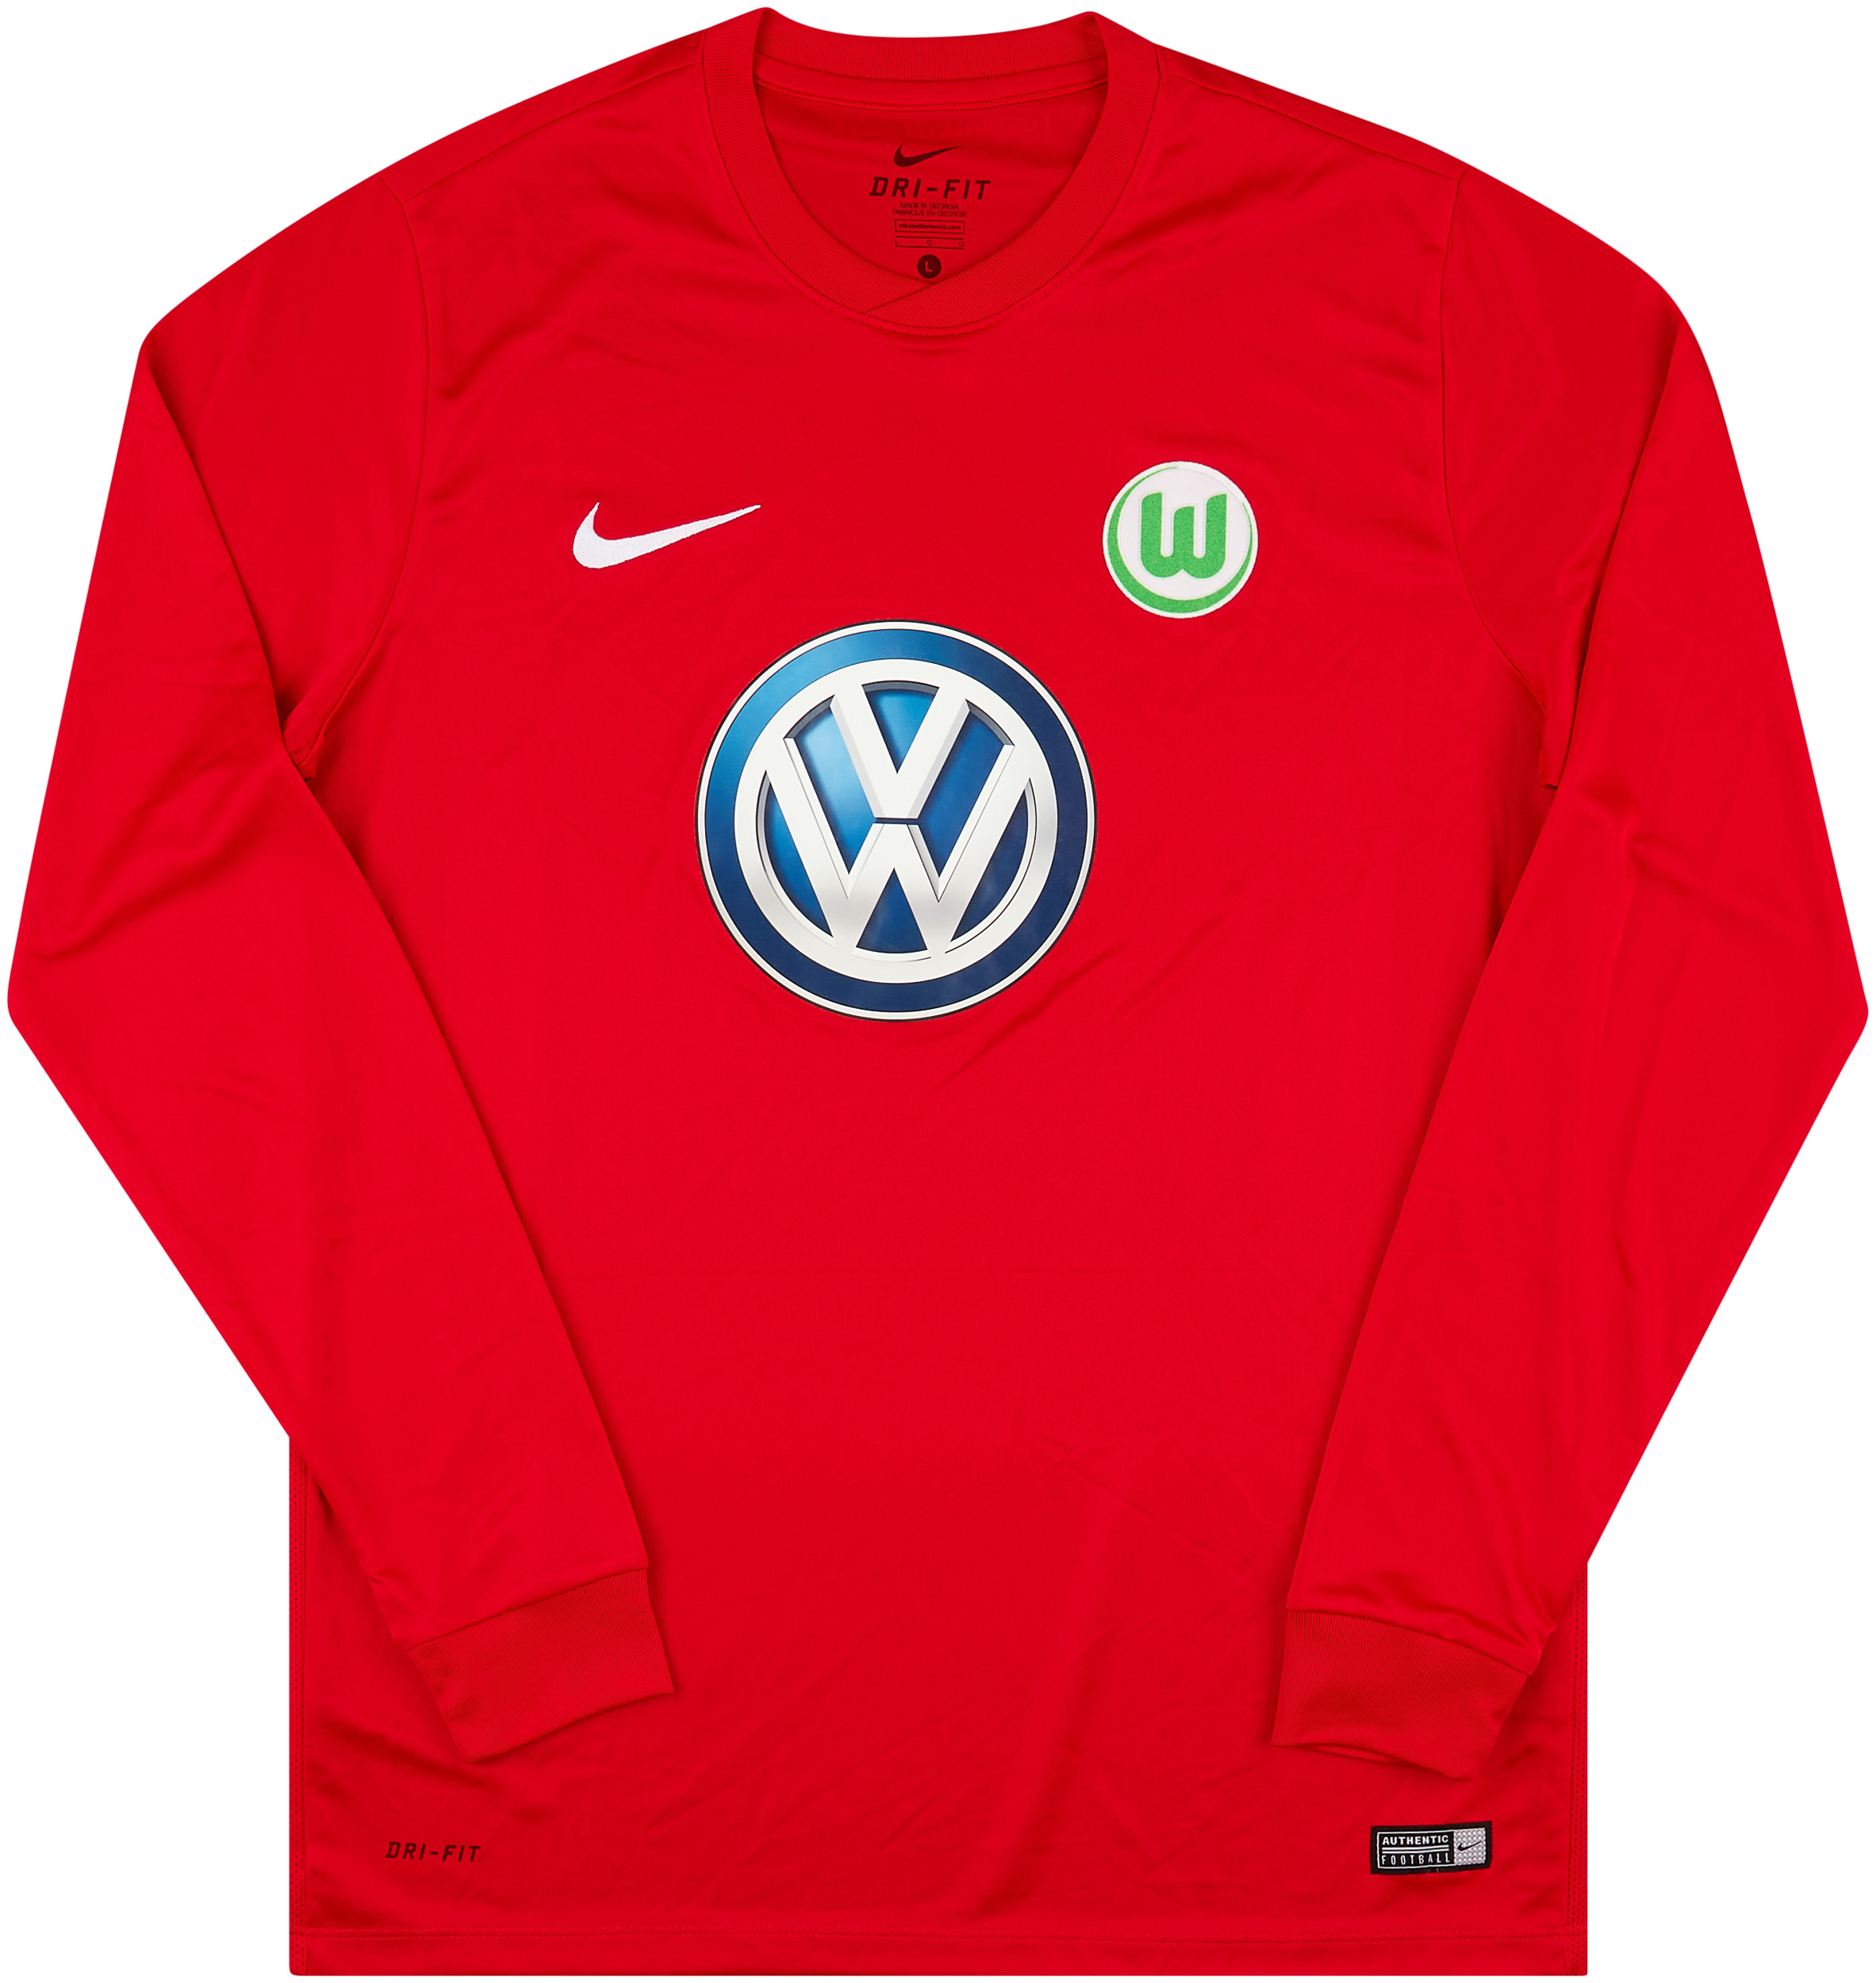 VfL Wolfsburg  Goleiro camisa (Original)